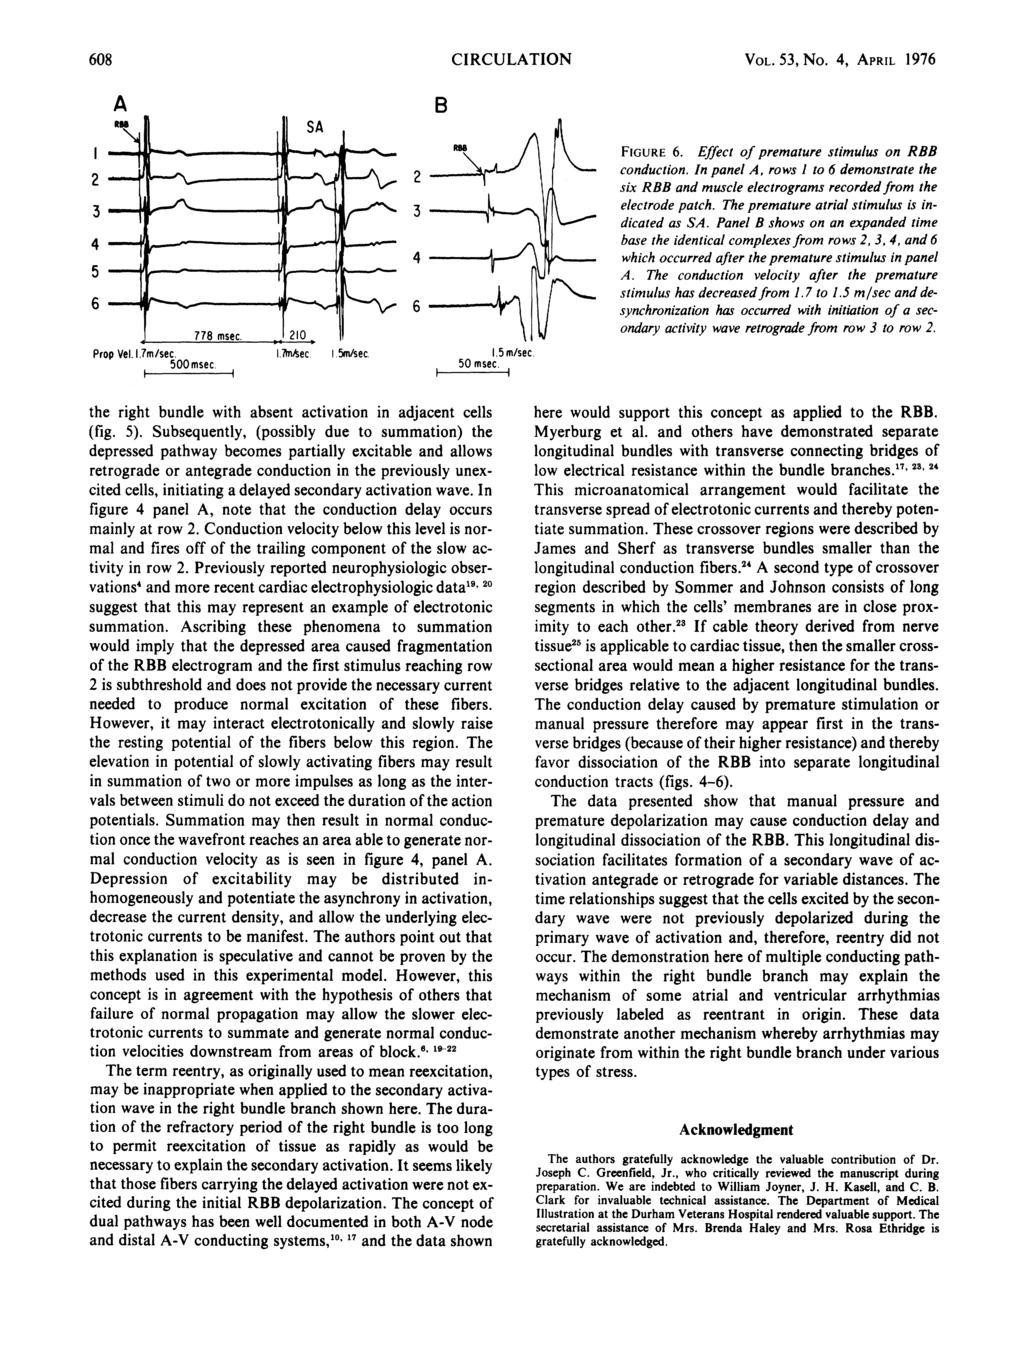 608 CIRCULATION A B VOL. 5, No. 4, APRIL 1976 4 5 6 Prop Vel. 1.7m/sec. 500 msec. 4 6 I.fn4sec 5m/sec. 1.5m/secc. 50 msec It K FIGURE 6. Effect of premature stimulus on RBB conduction.